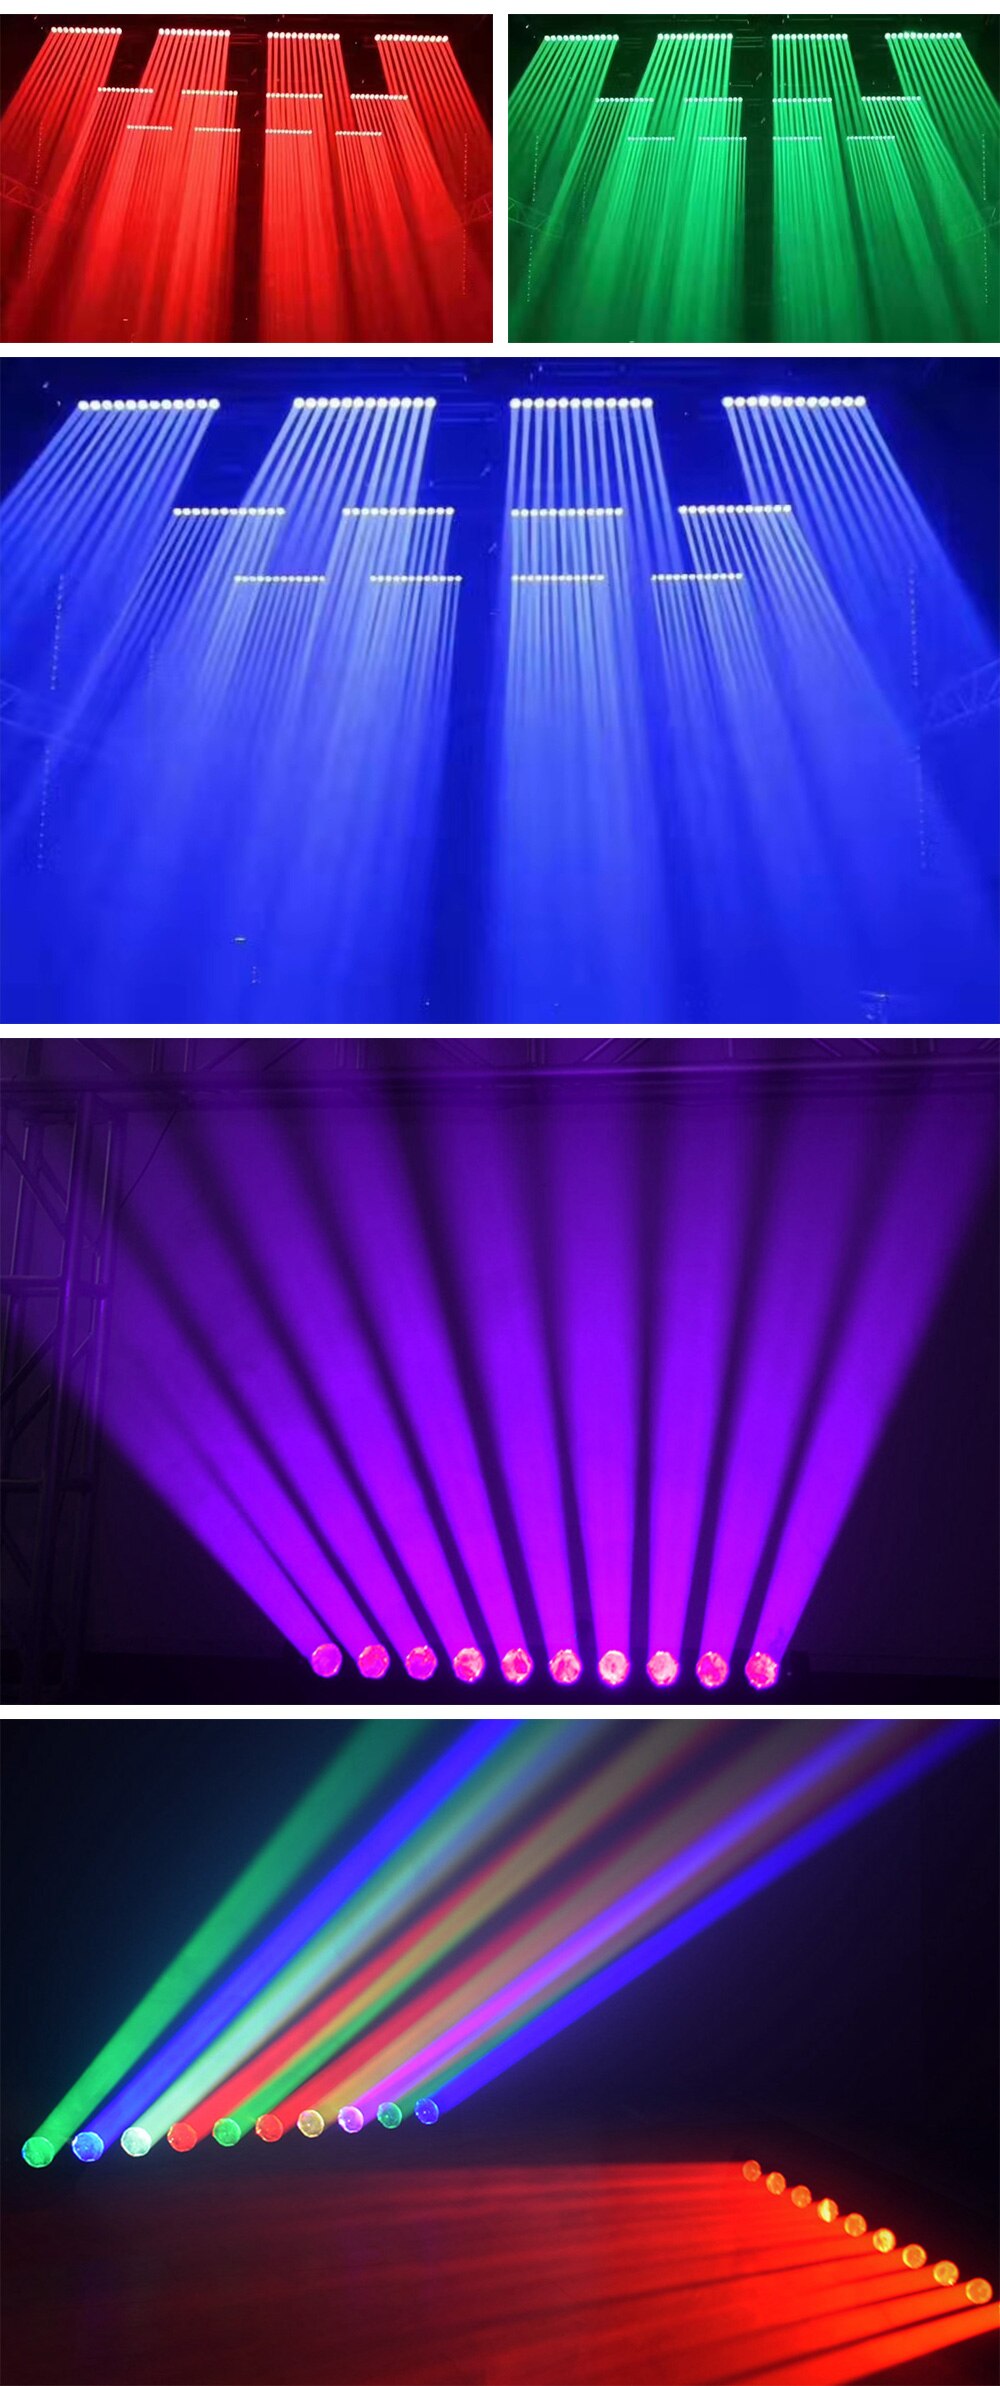 LED 10x40W Moving Head Beam Wash 2IN1 Light 150W DMX512 Control Bar Club Stage Effect Lighting Wedding led Wall Washer Bar Light